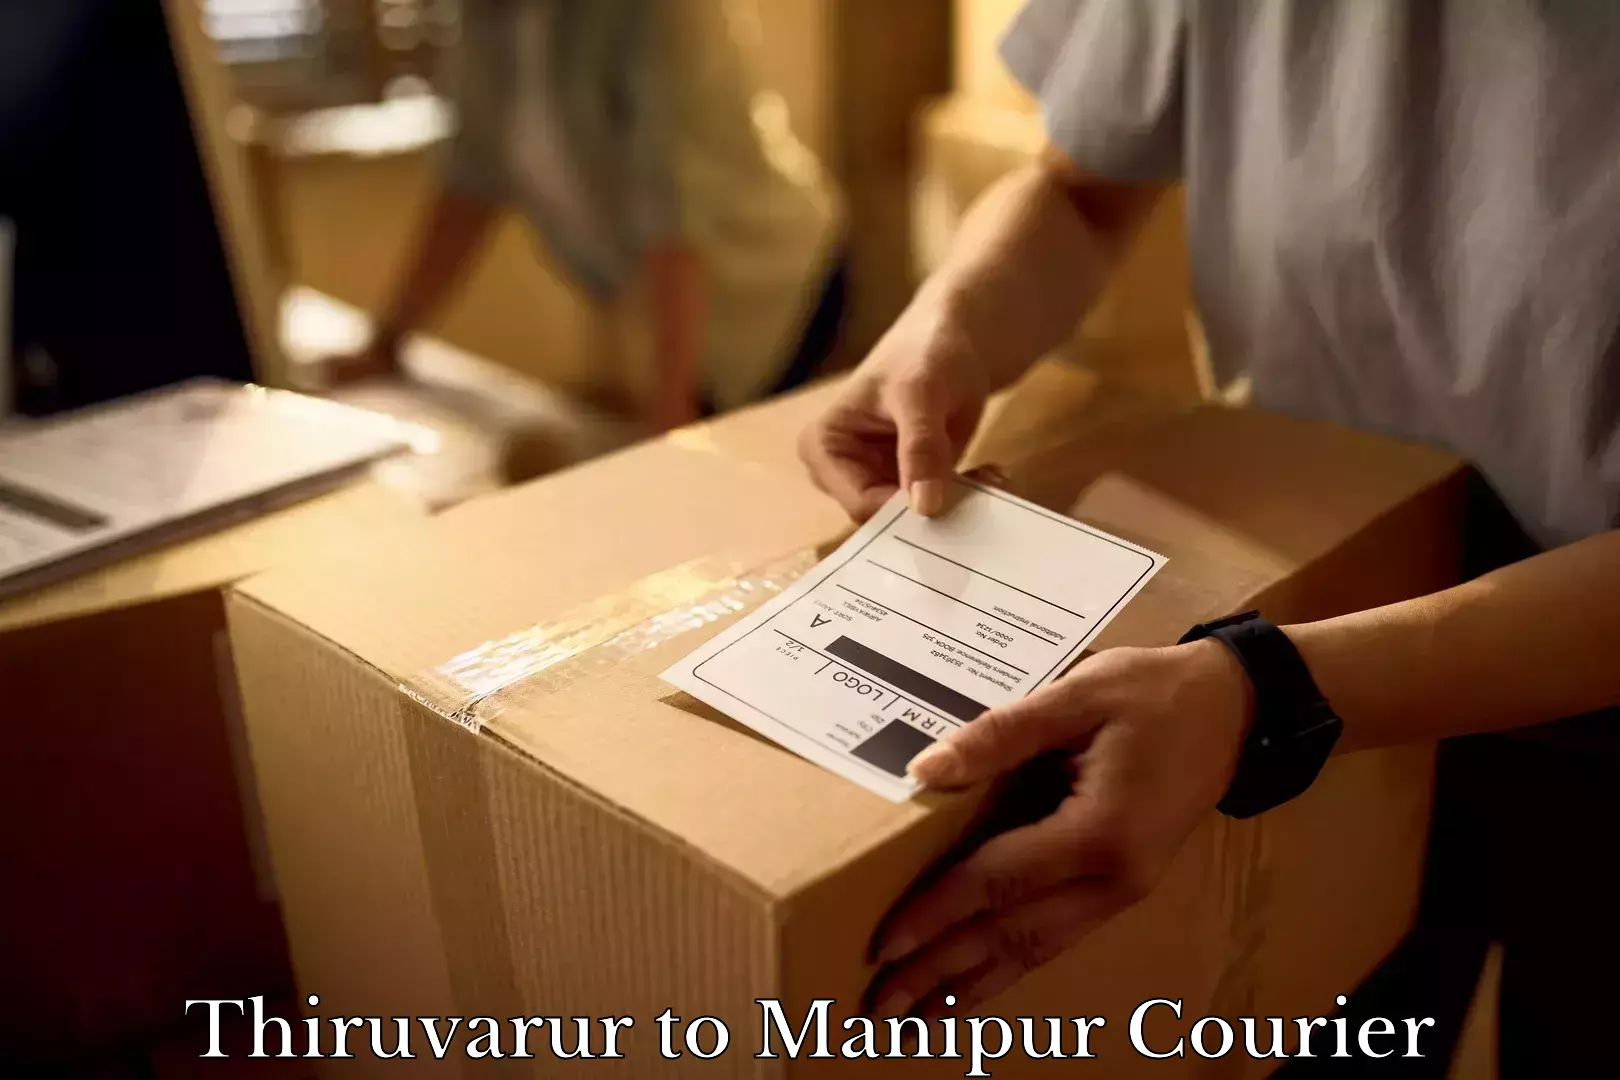 Furniture transport experts Thiruvarur to Manipur